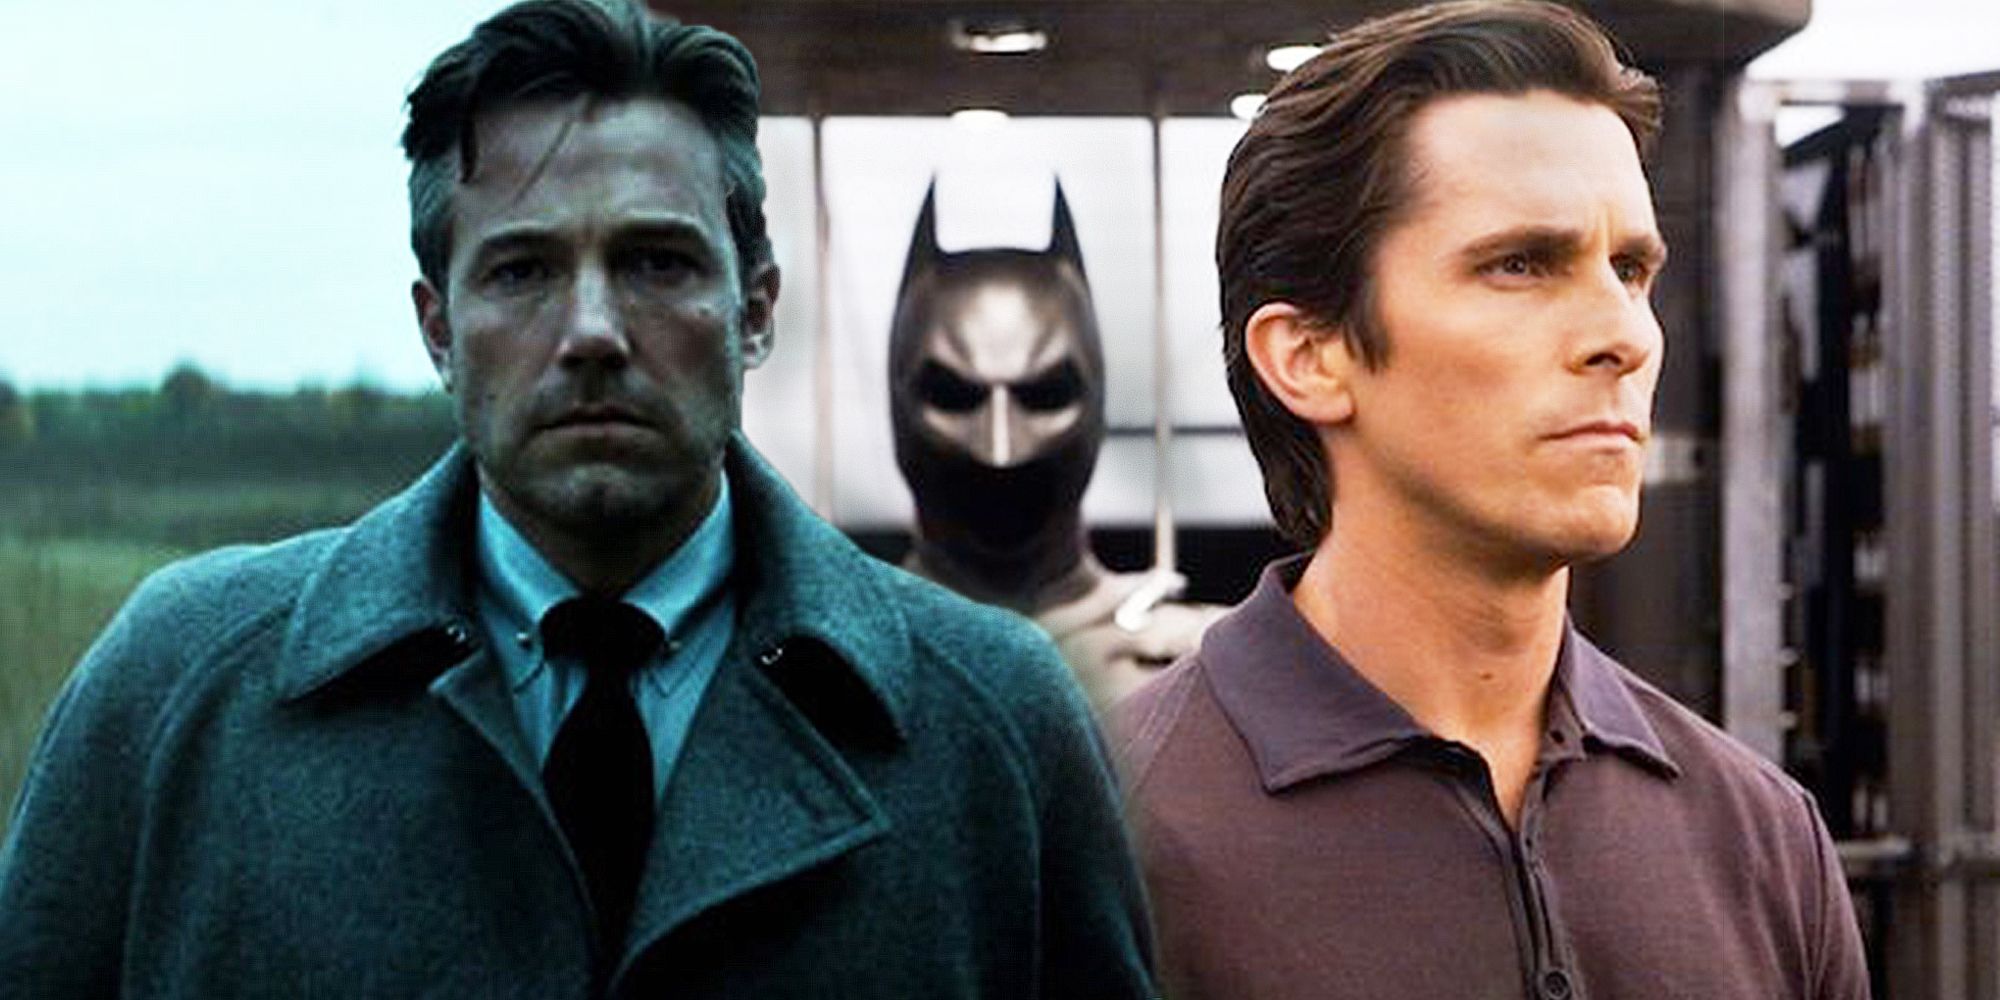 Ben Affleck and Christian Bale as Bruce Wayne